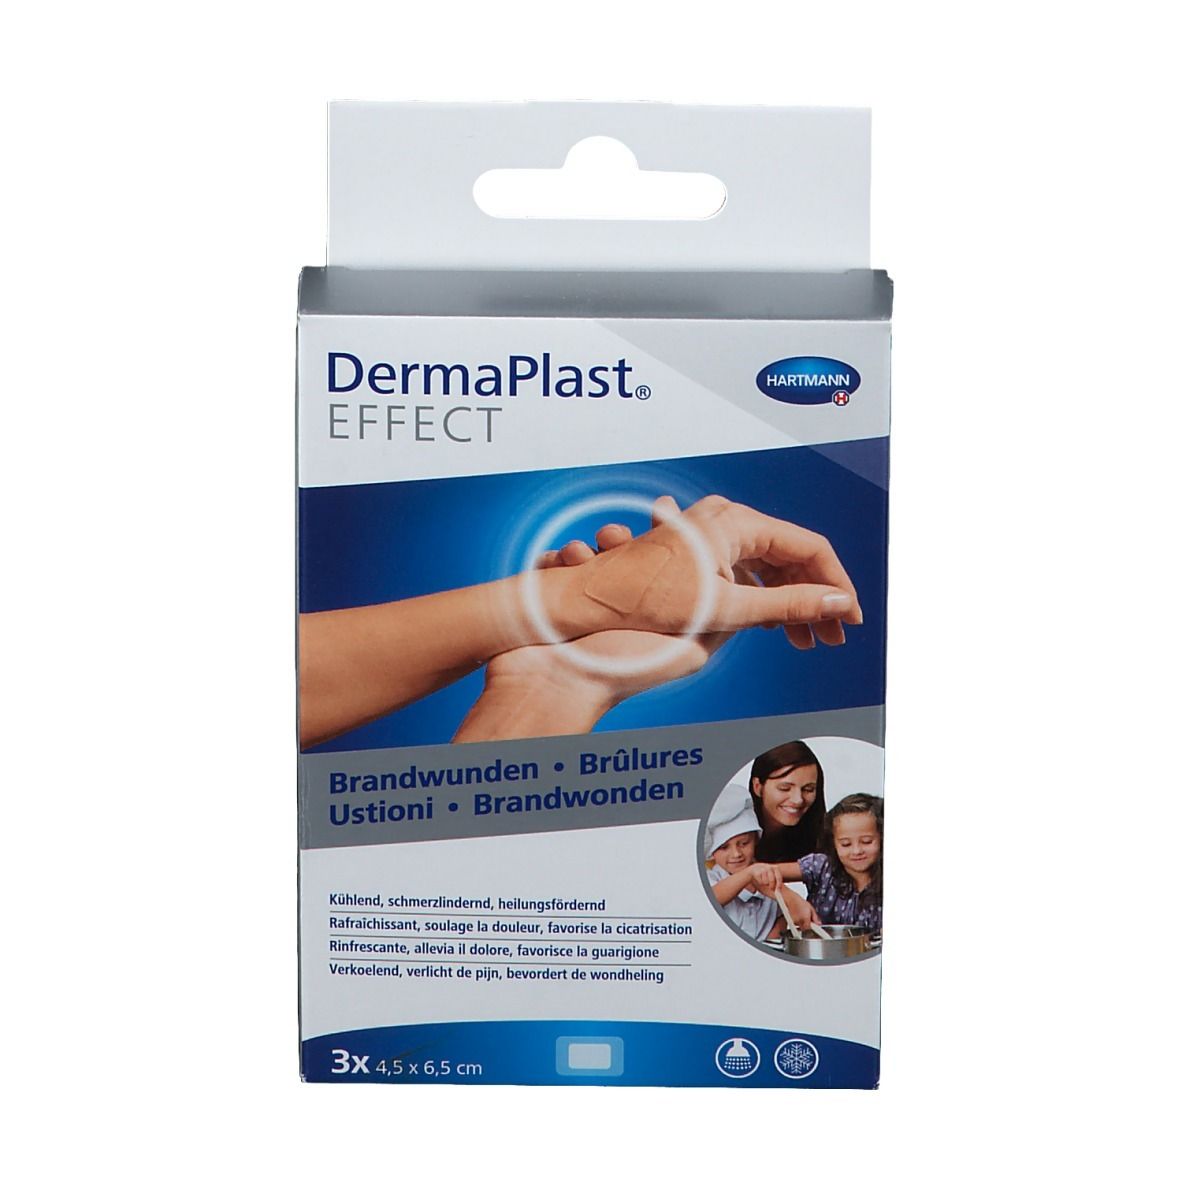 DermaPlast® EFFECT Brandwunden 4,5 x 6,5 cm